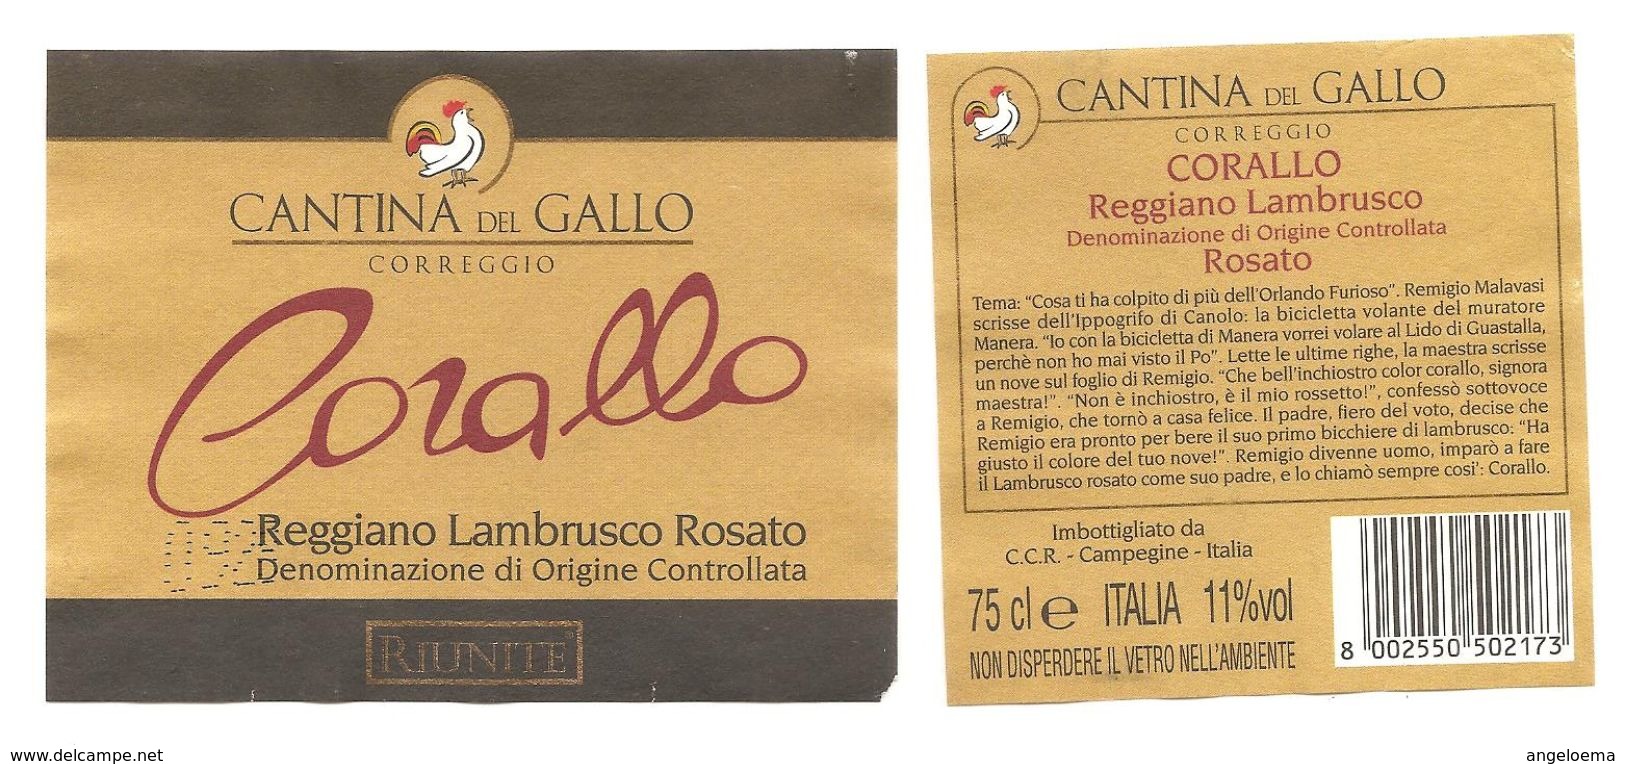 ITALIA - Etichetta Vino LAMBRUSCO REGGIANO "CORALLO" Doc Cantine RIUNITE Di Reggio E. Rosato Dell'EMILIA - Gallo - Vino Rosato